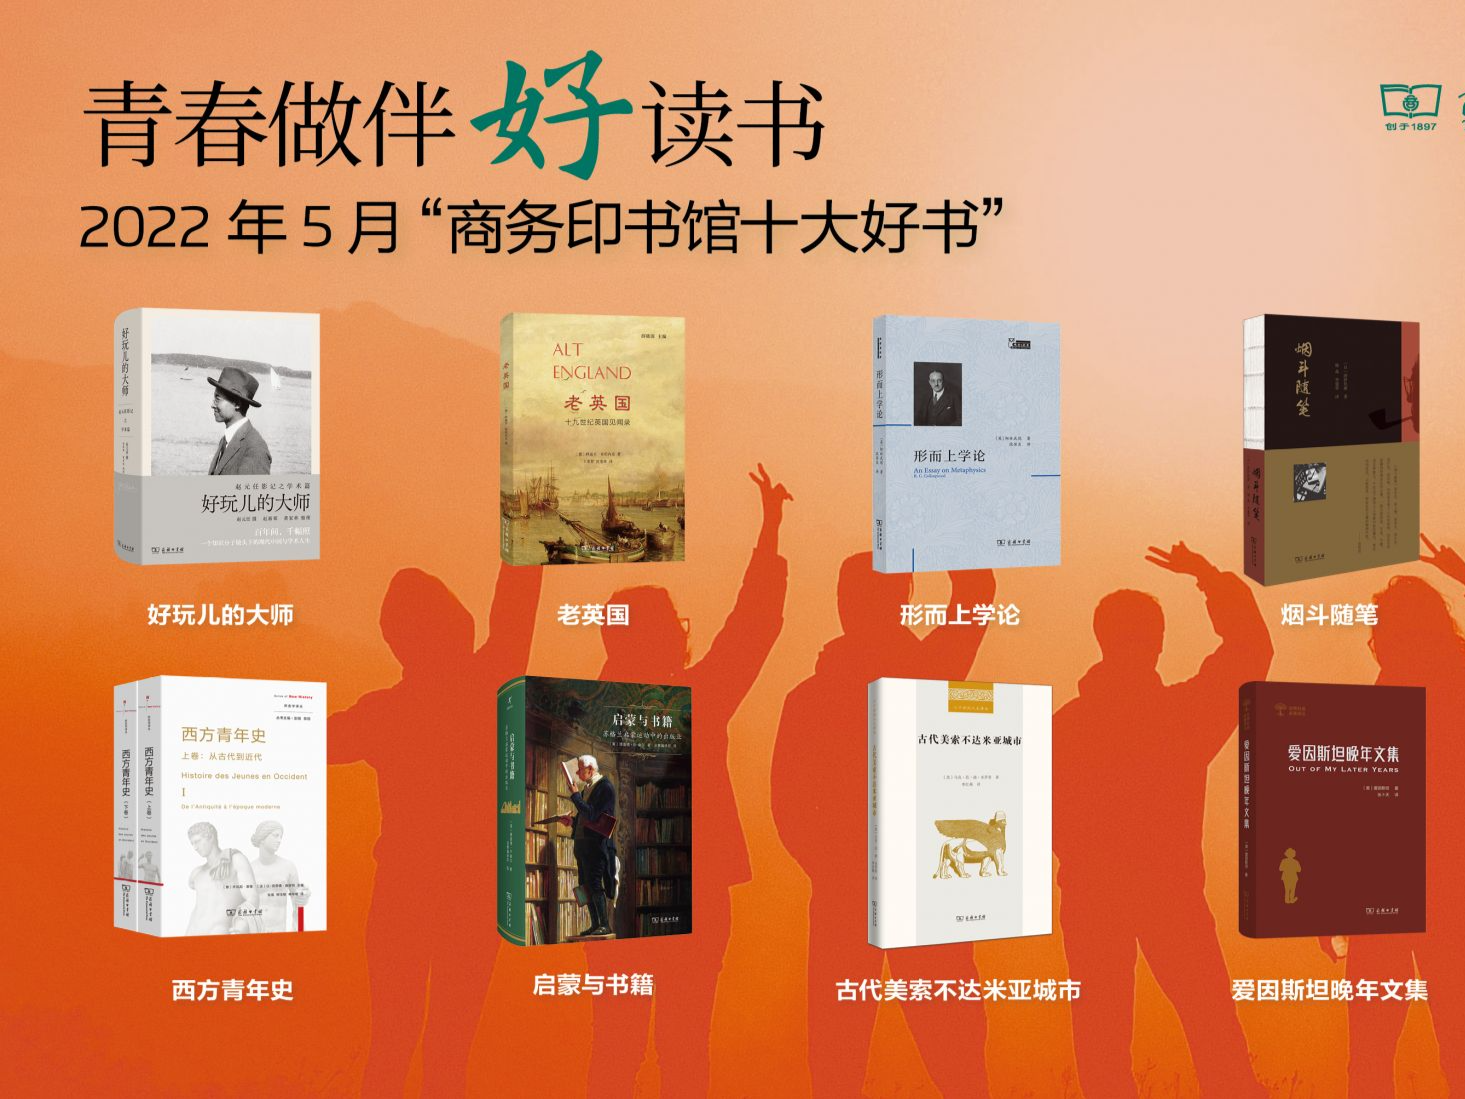 商务印书馆发布5月“十大好书”:《西方青年史》等入选